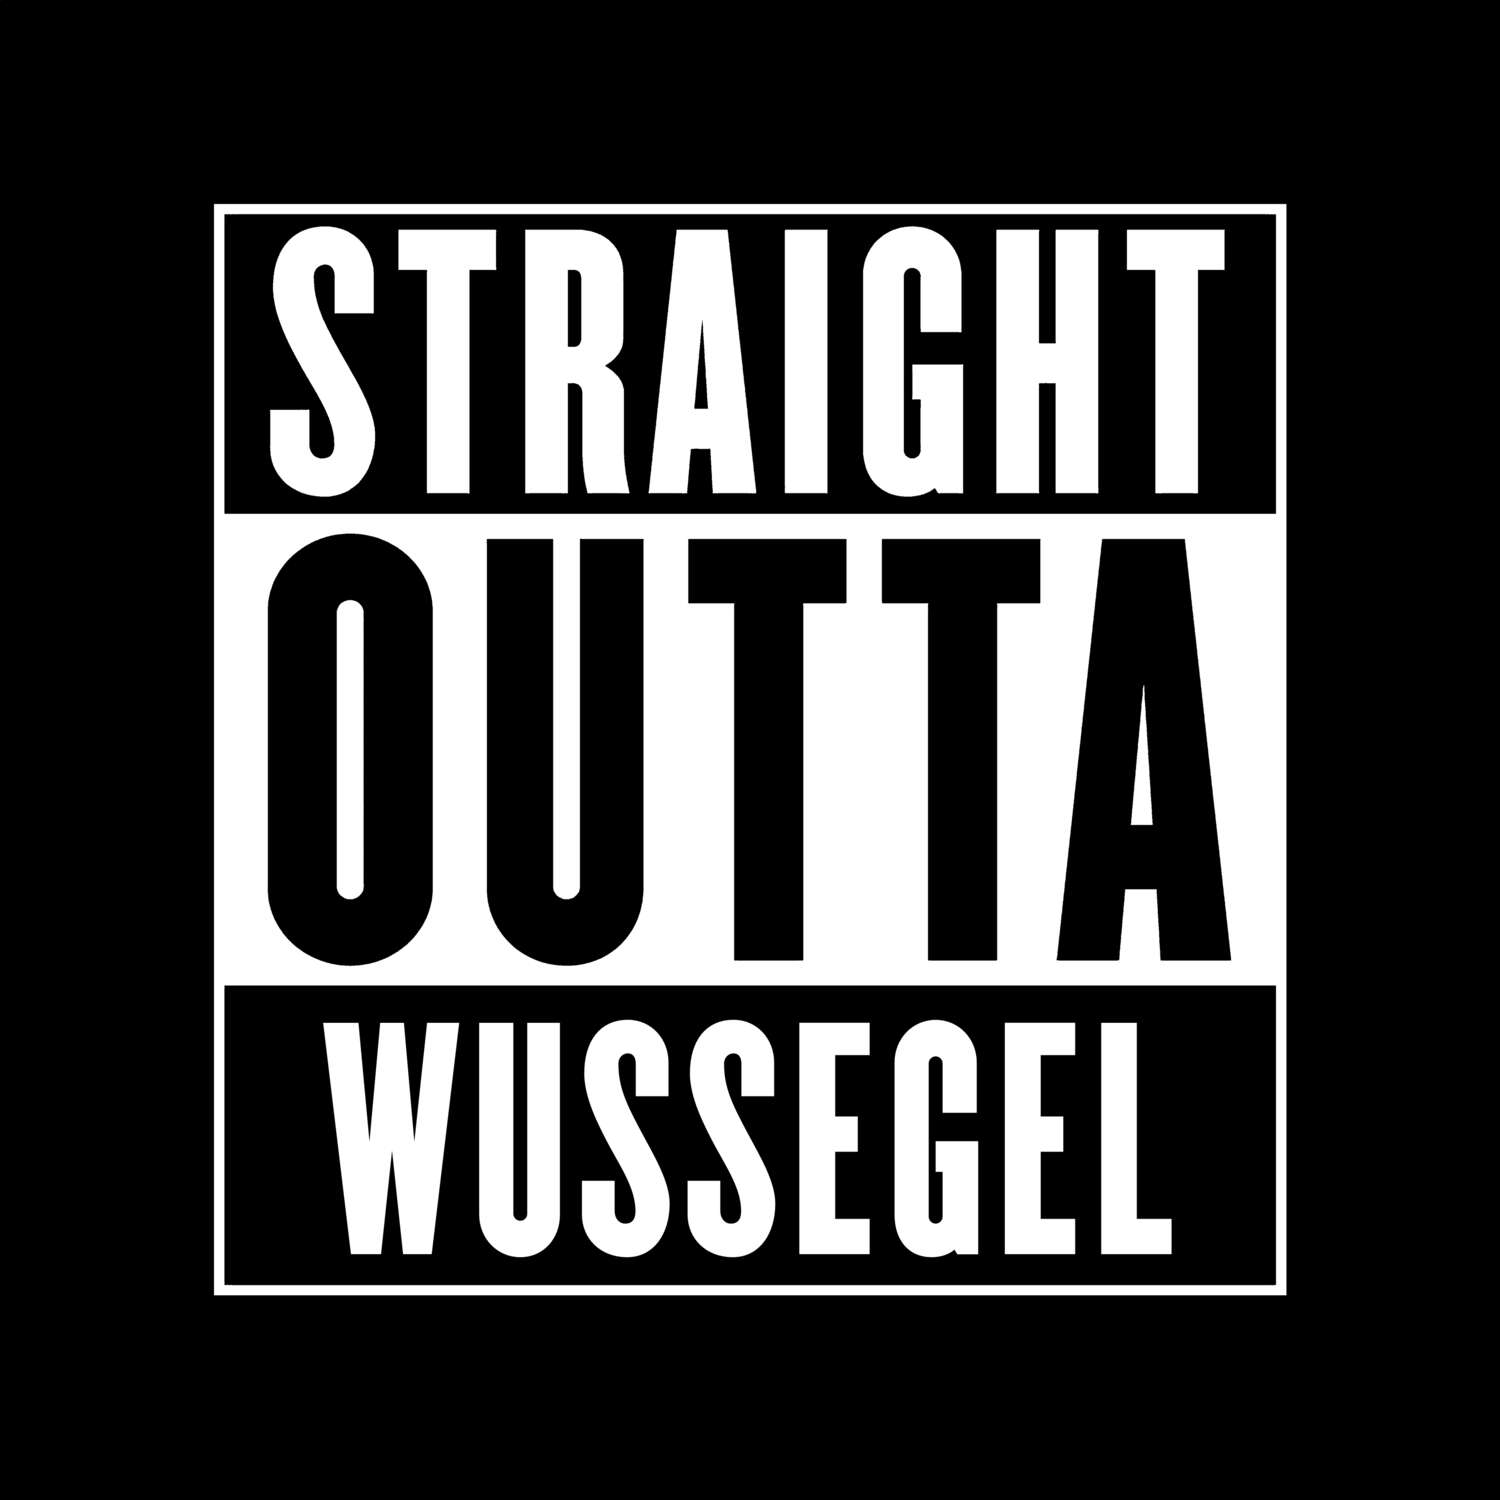 Wussegel T-Shirt »Straight Outta«